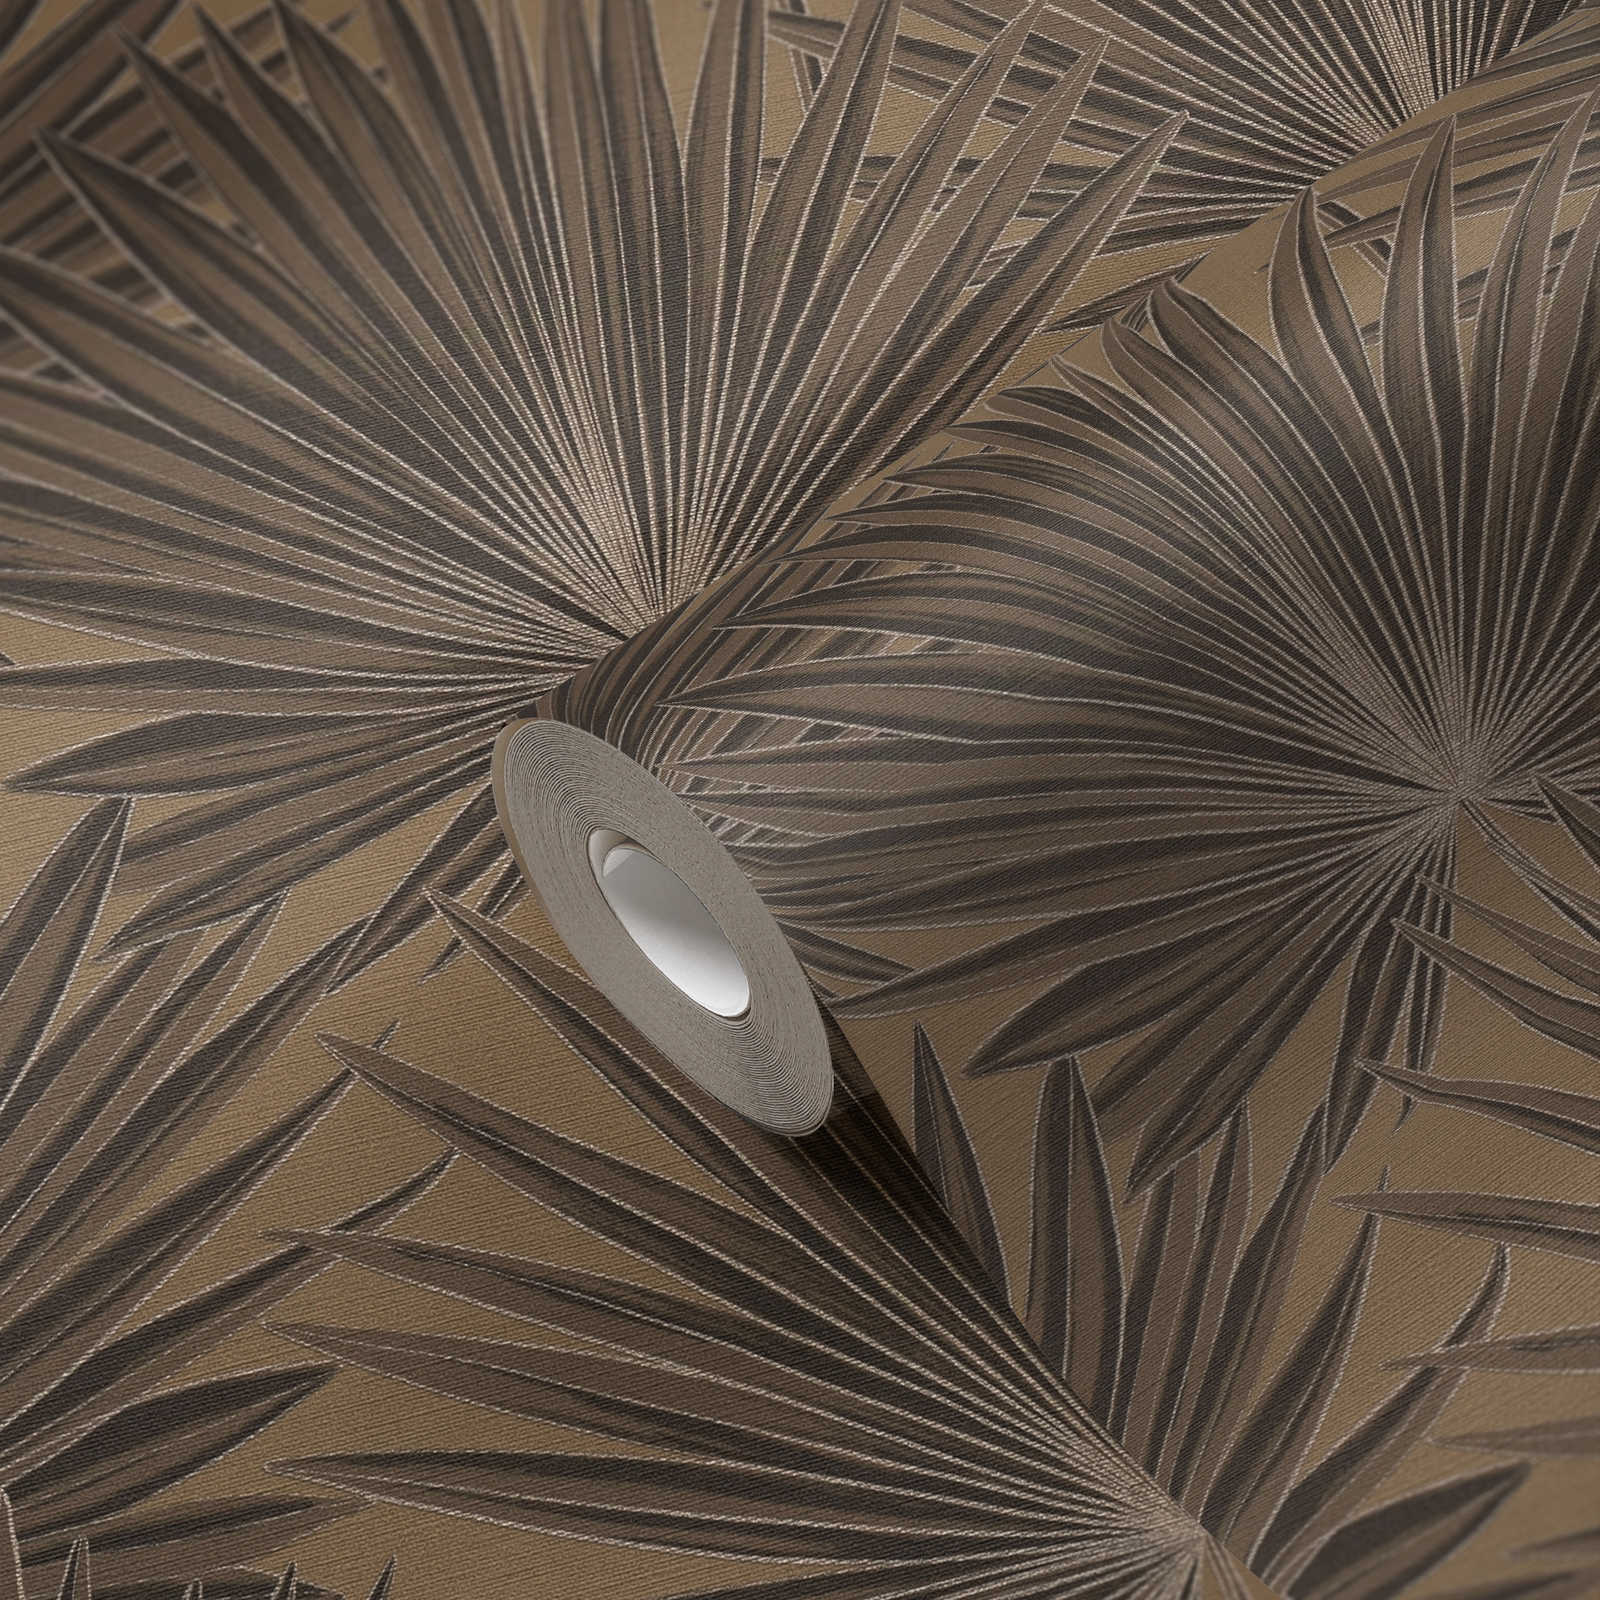             Vliestapete mit Palmblättern und Glanzeffekt – Braun, Schwarz
        